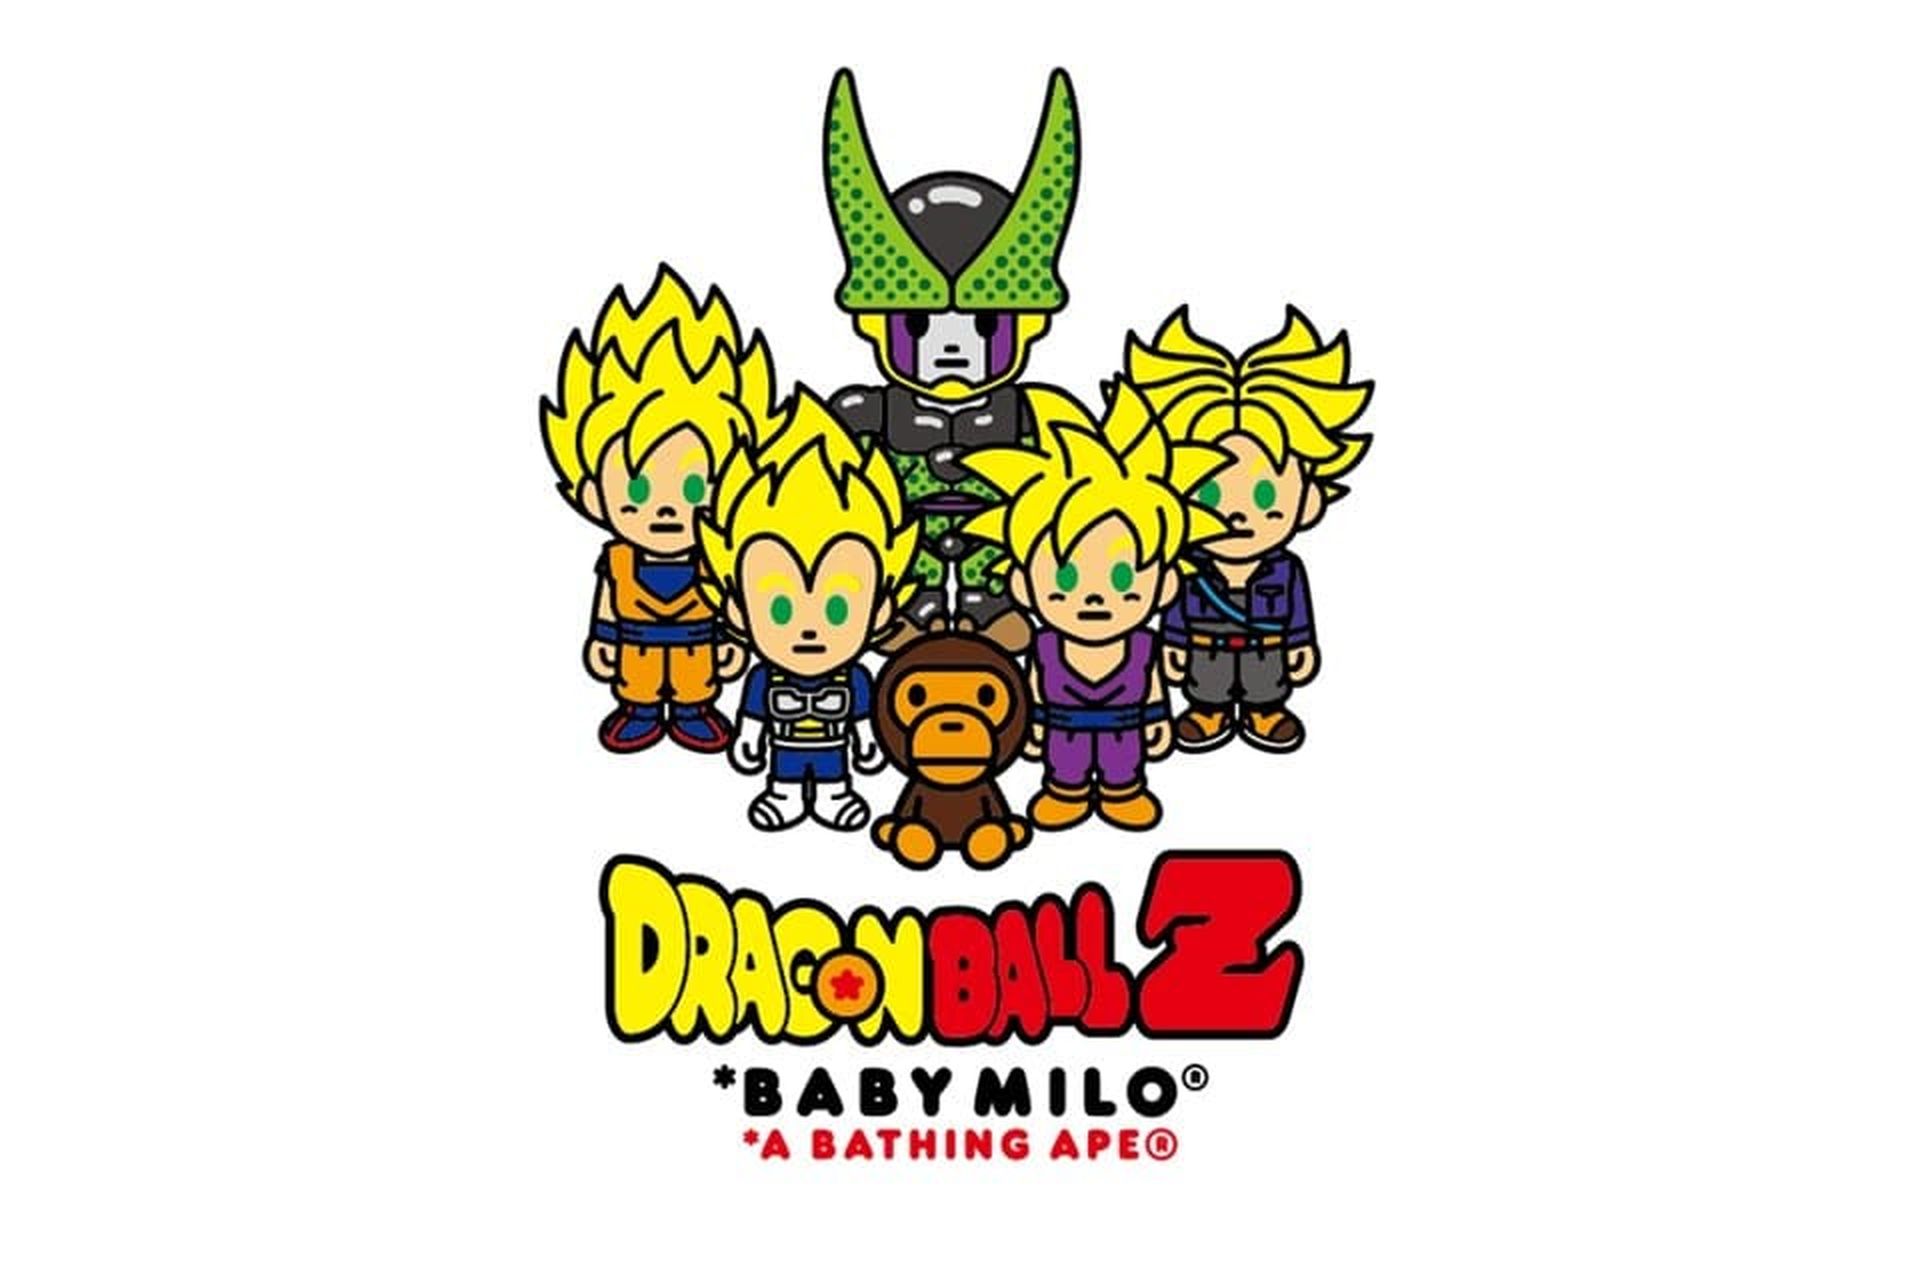 Las nuevas camisetas, chaquetas y accesorios de Dragon Ball Z